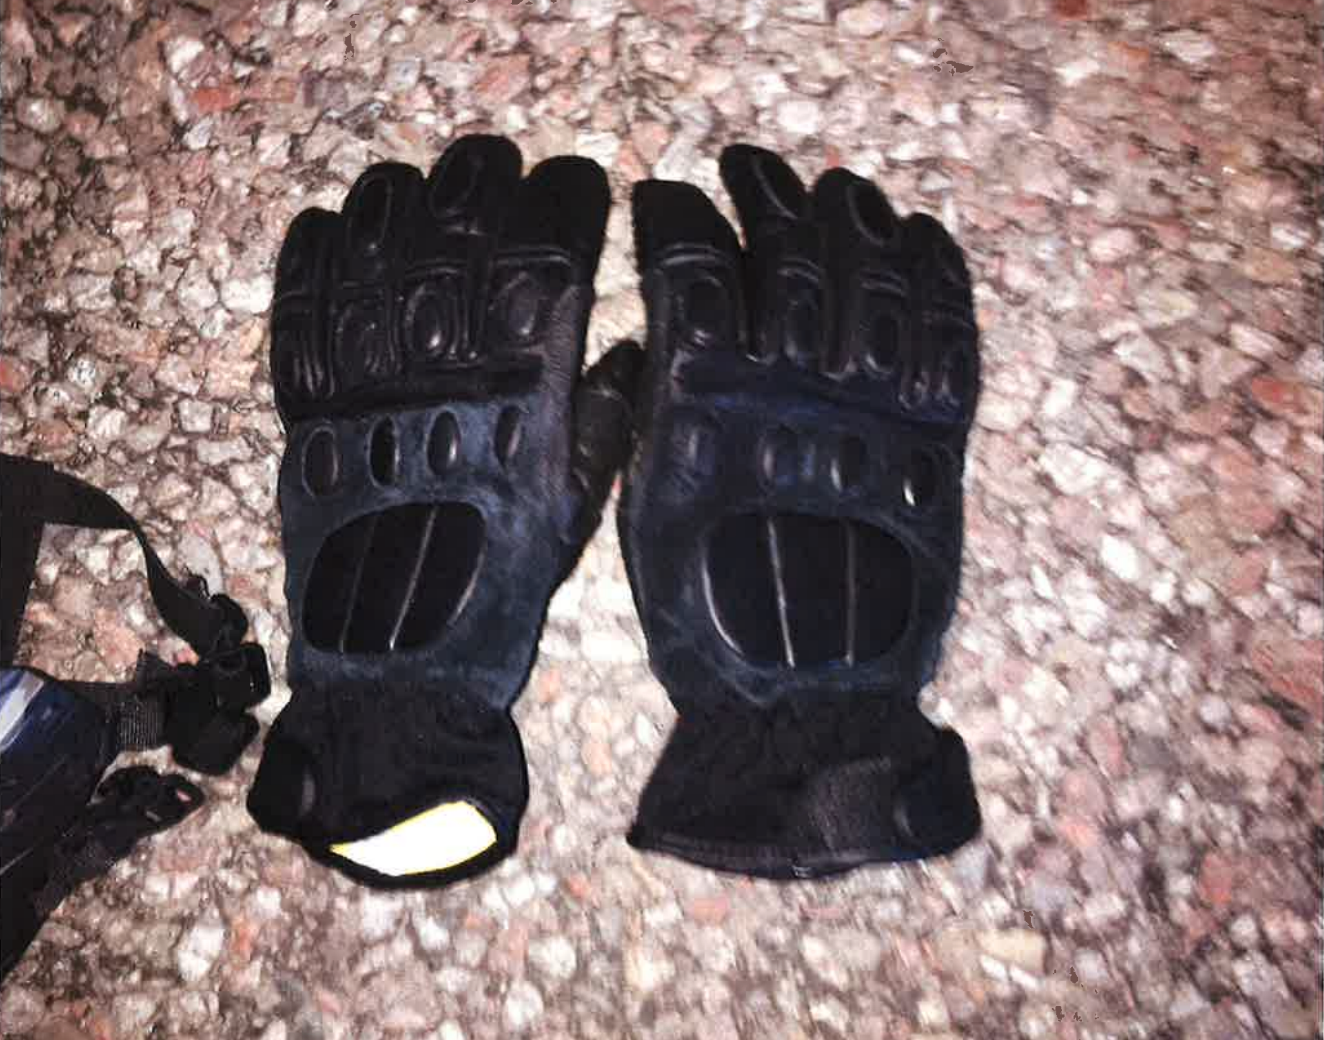 Ytterligare ett par handskar hittades i en påse.